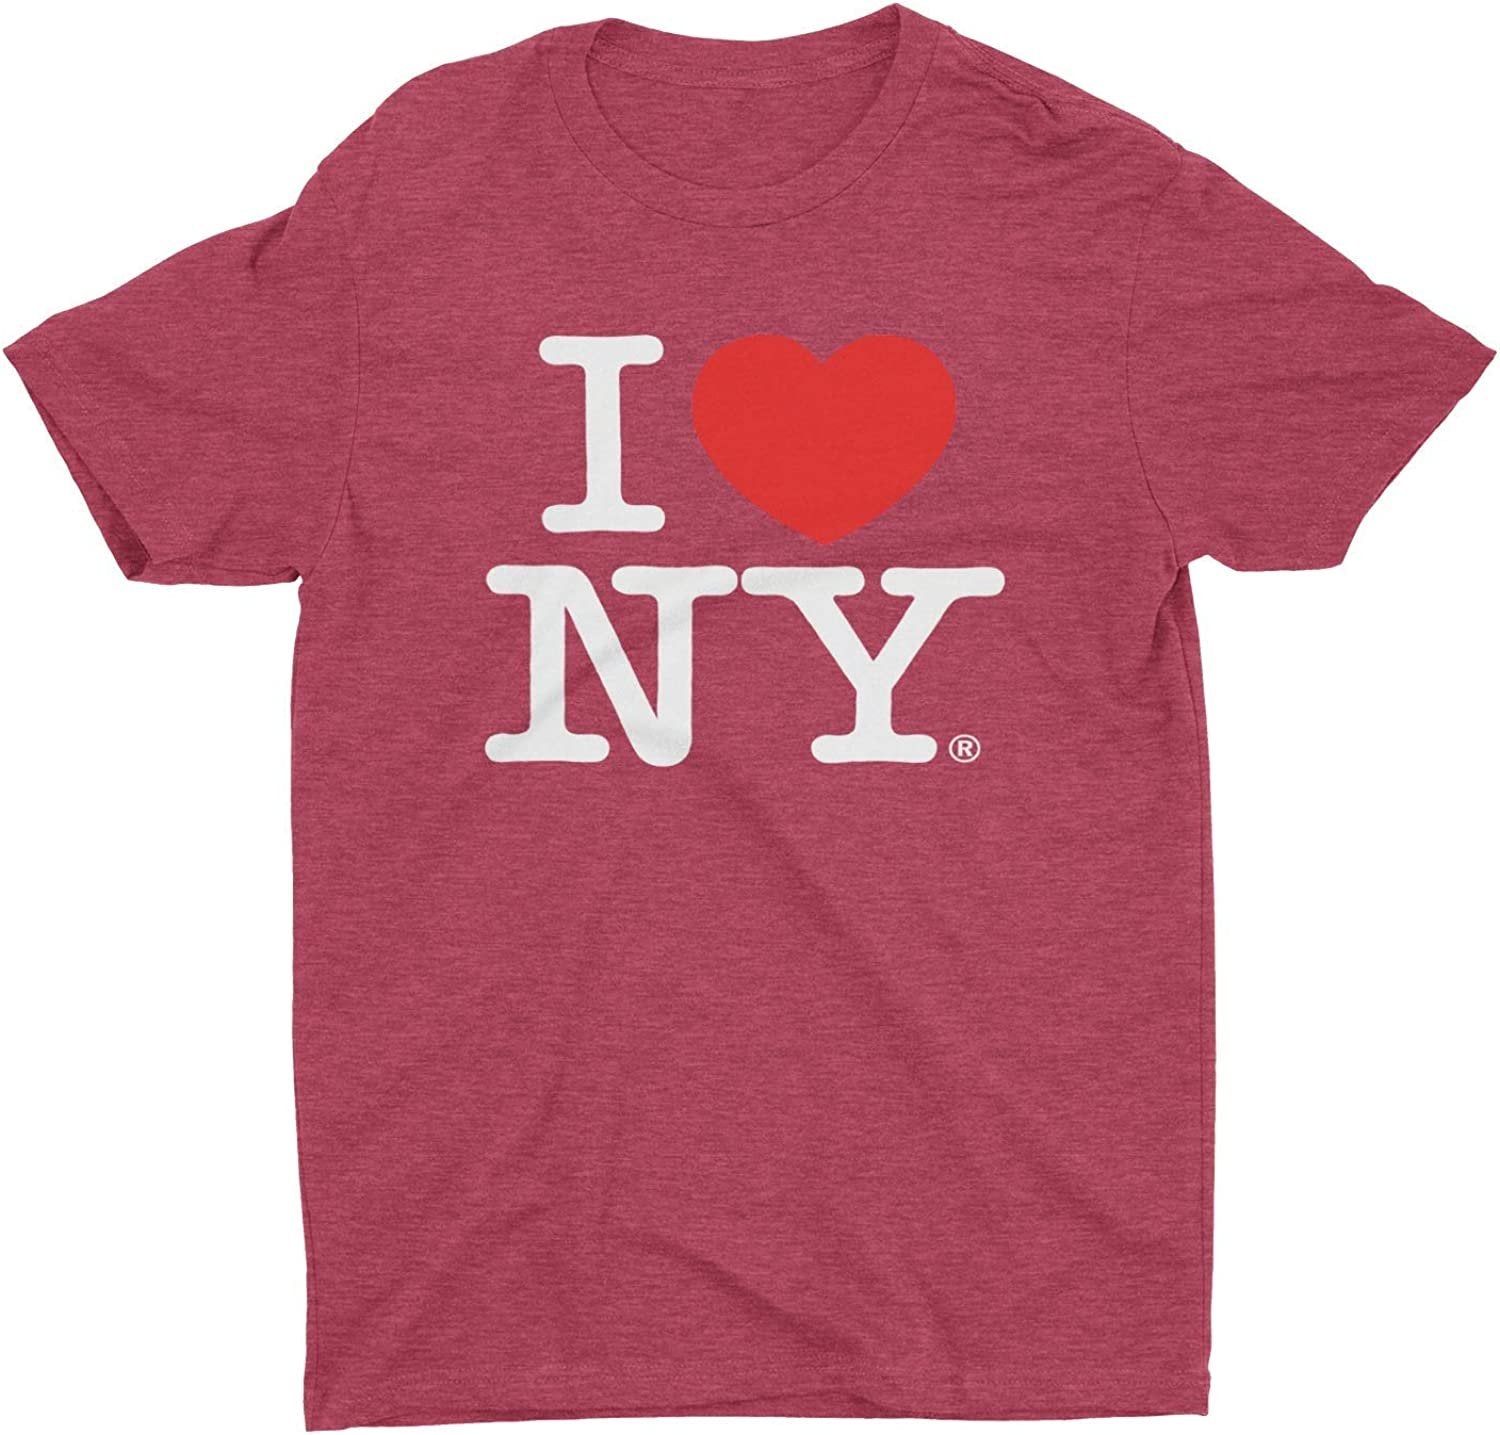 T-shirt rétro vintage I Love NY bordeaux chiné